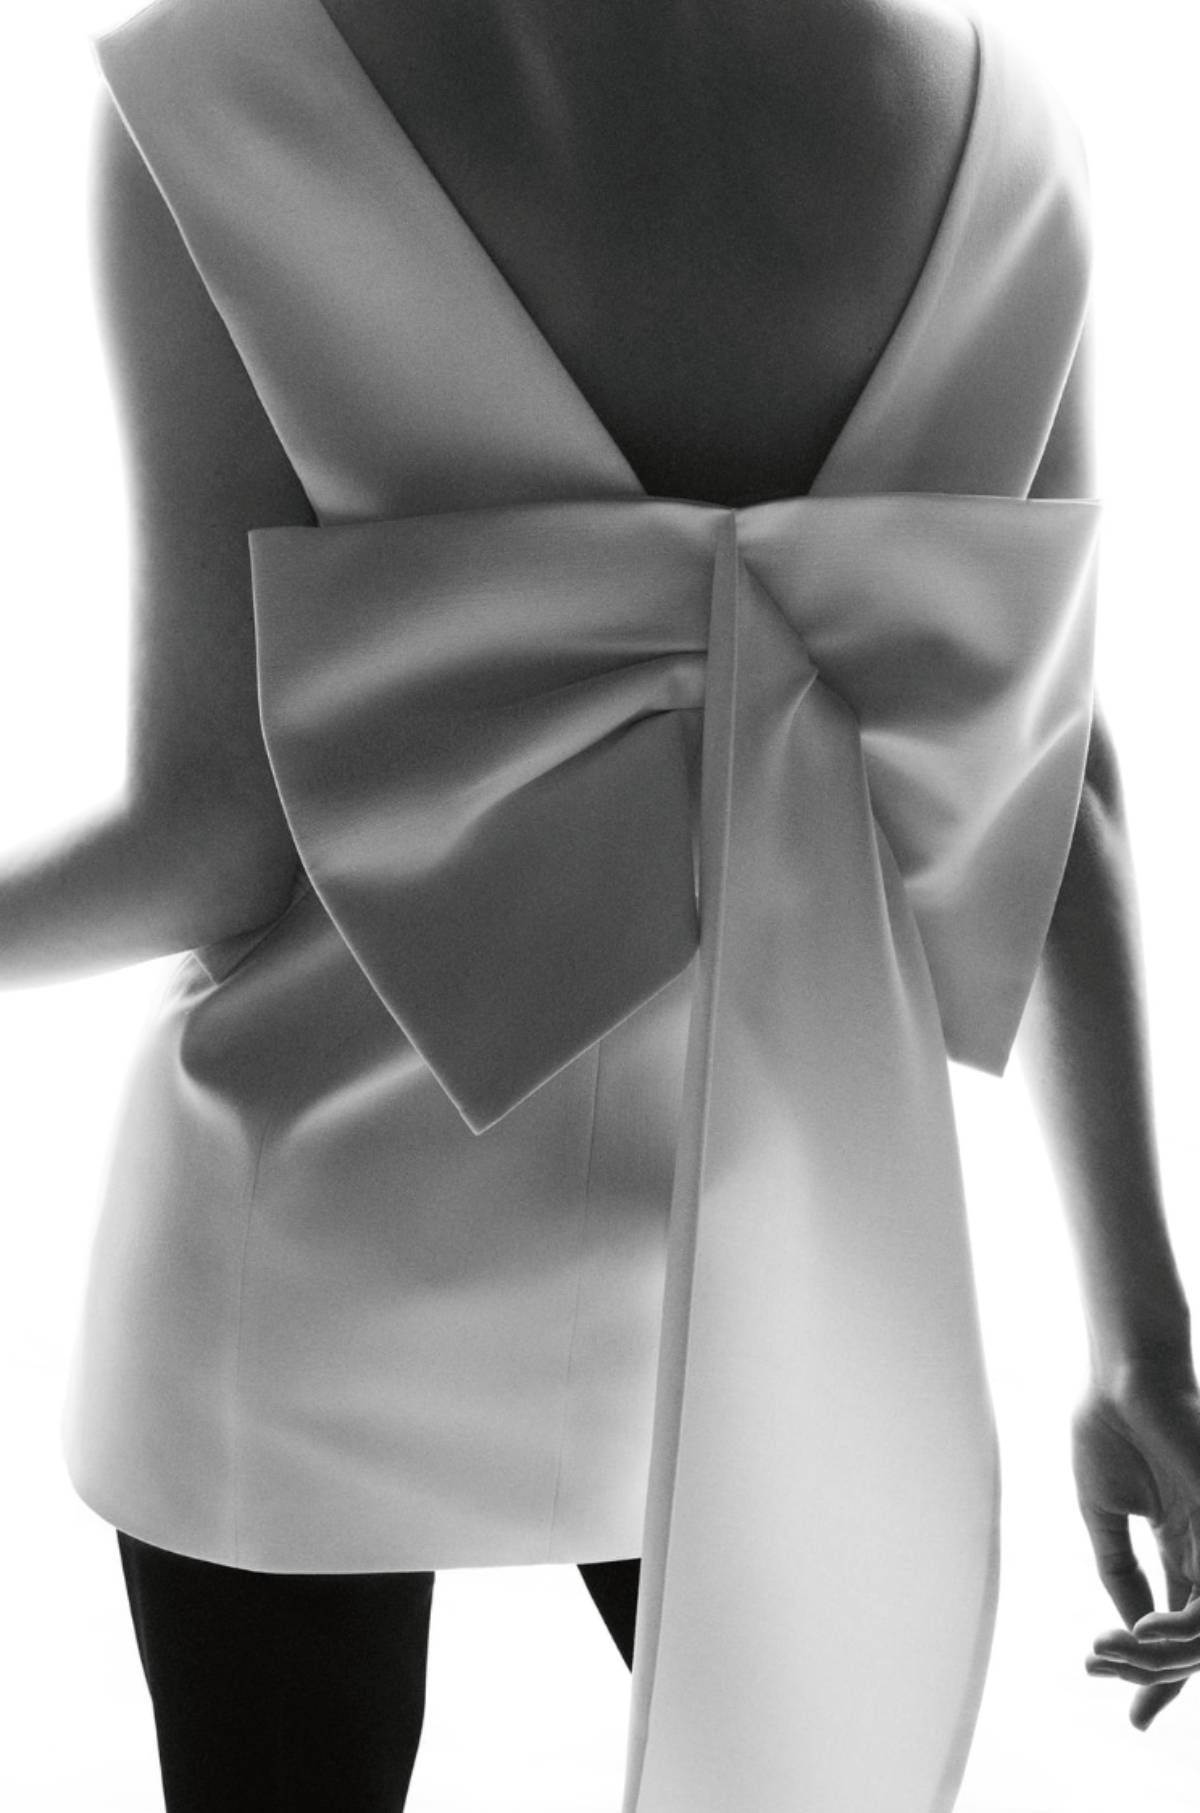 Detalle del lazo de la espalda del chaleco blanco de Zara